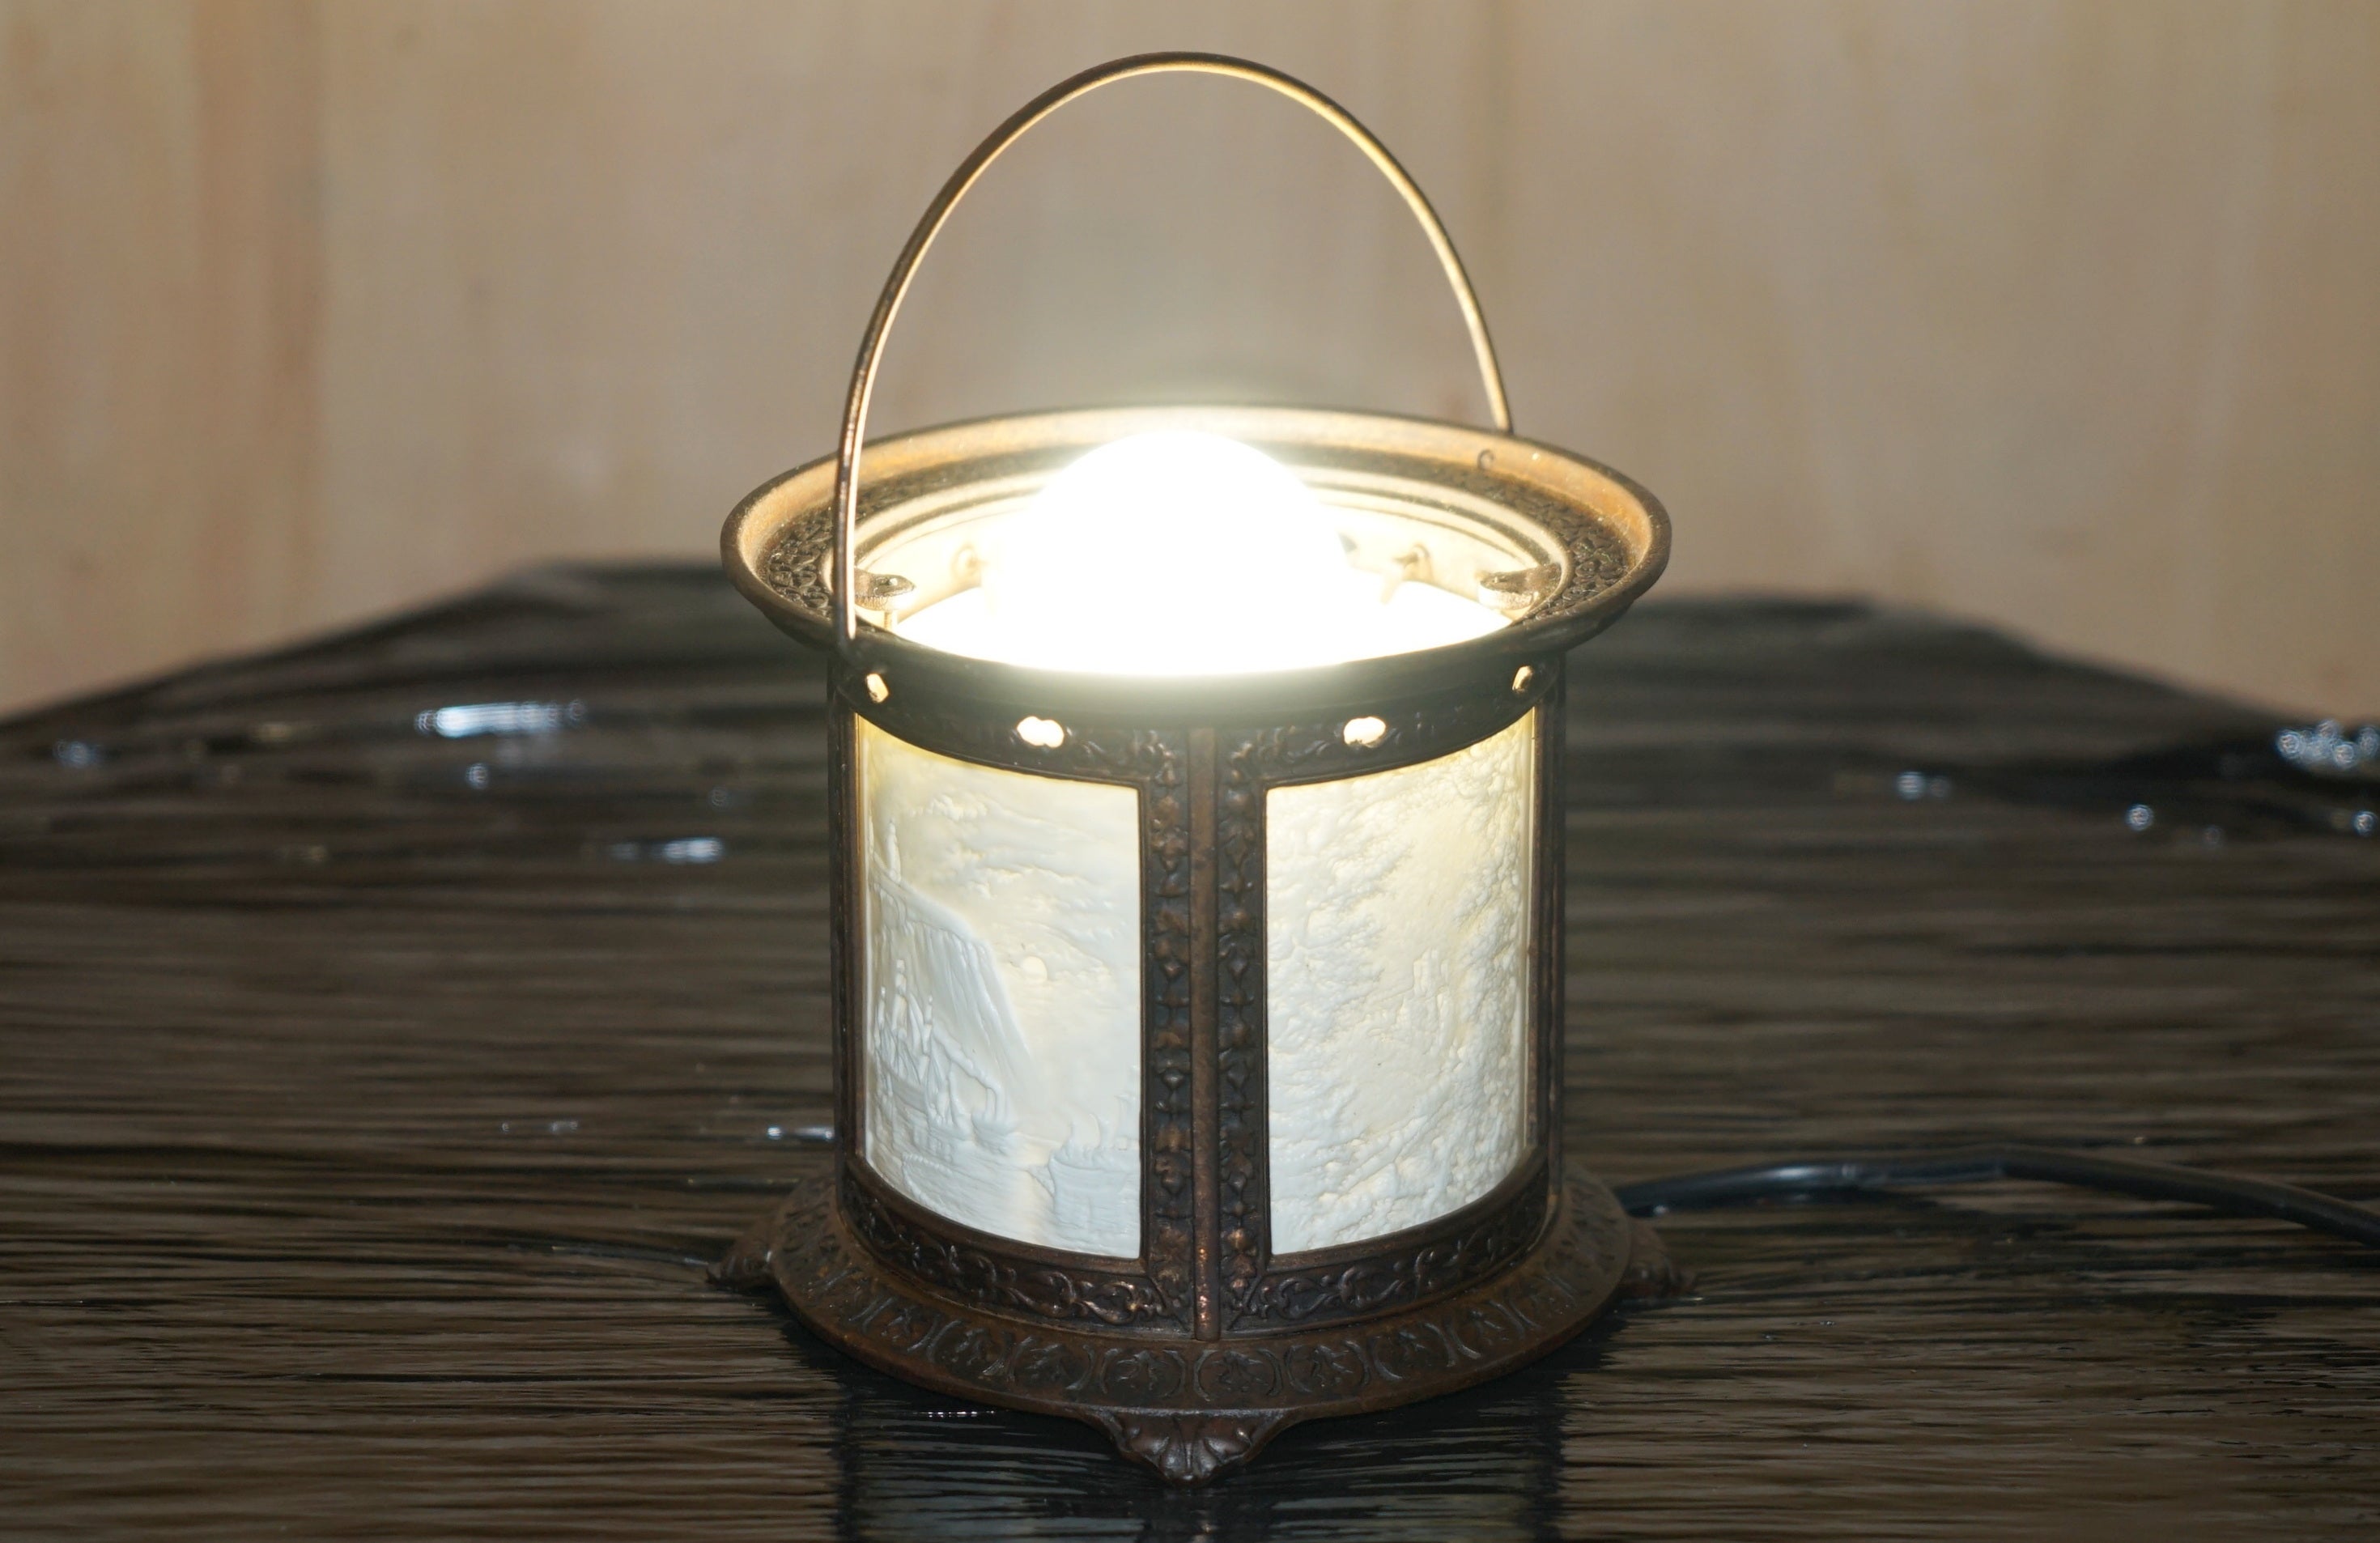 Wir freuen uns, diese schöne Grand Tour bronzierte Kerzenhalter-Lampe, die gewartet und restauriert wurde, um eine normale Glühbirne zu beherbergen, um als dekorative Tischlampe verwendet zu werden, zum Verkauf anzubieten

Ein sehr gut aussehendes